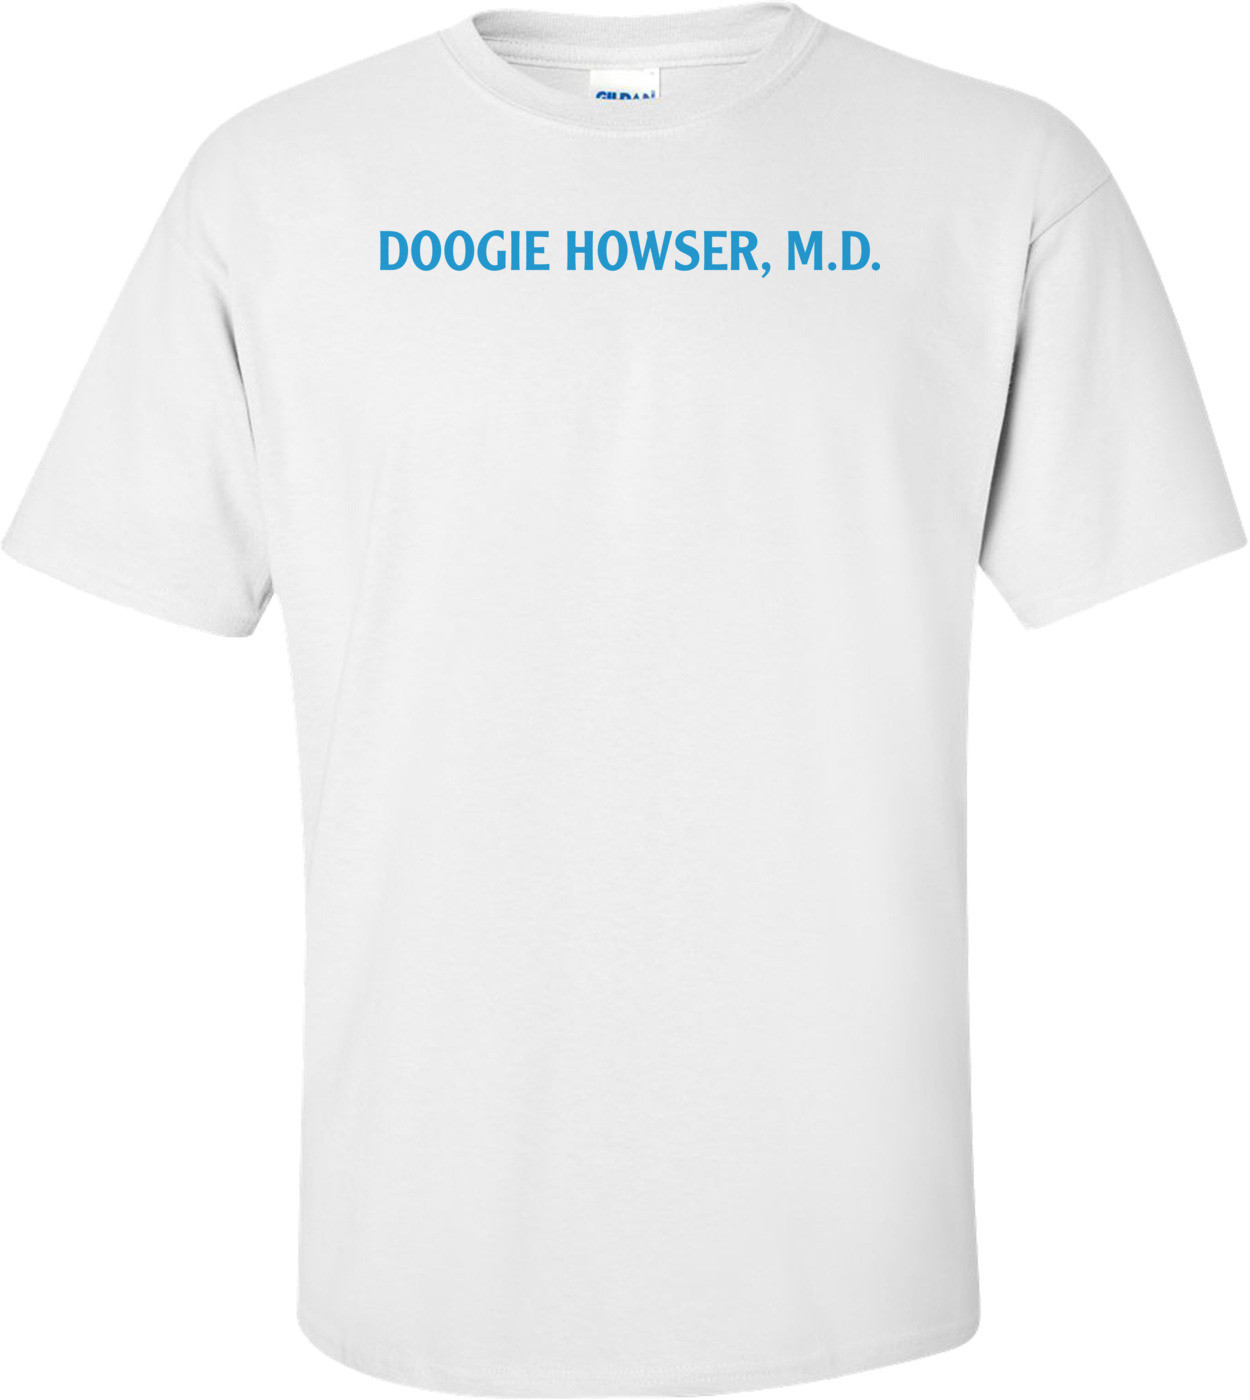 Doogie Howser, M.d.